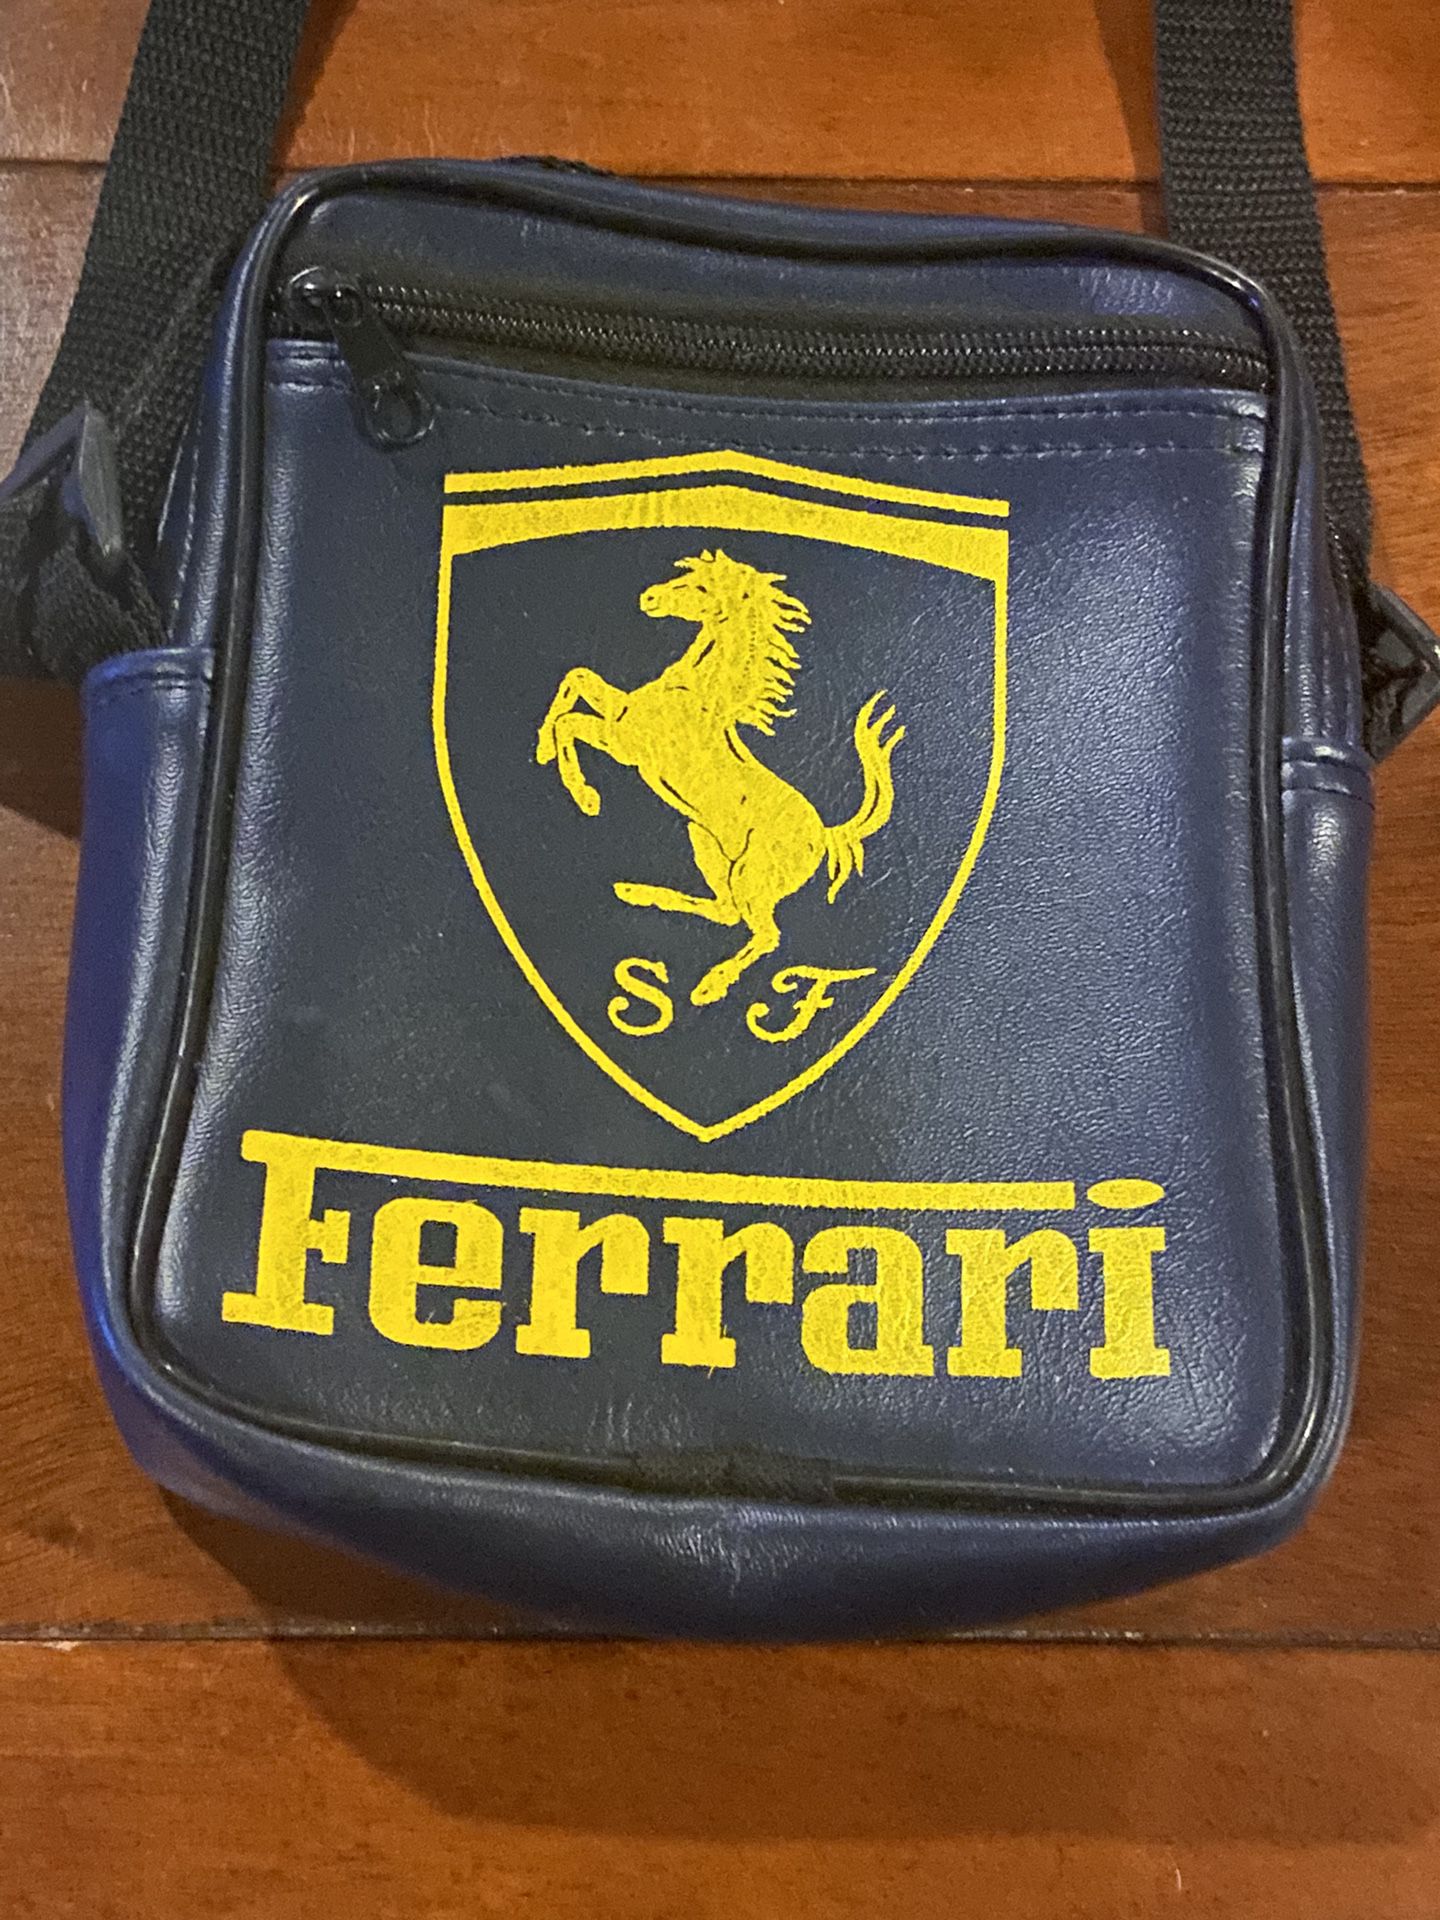 Ferrari Messenger Bag